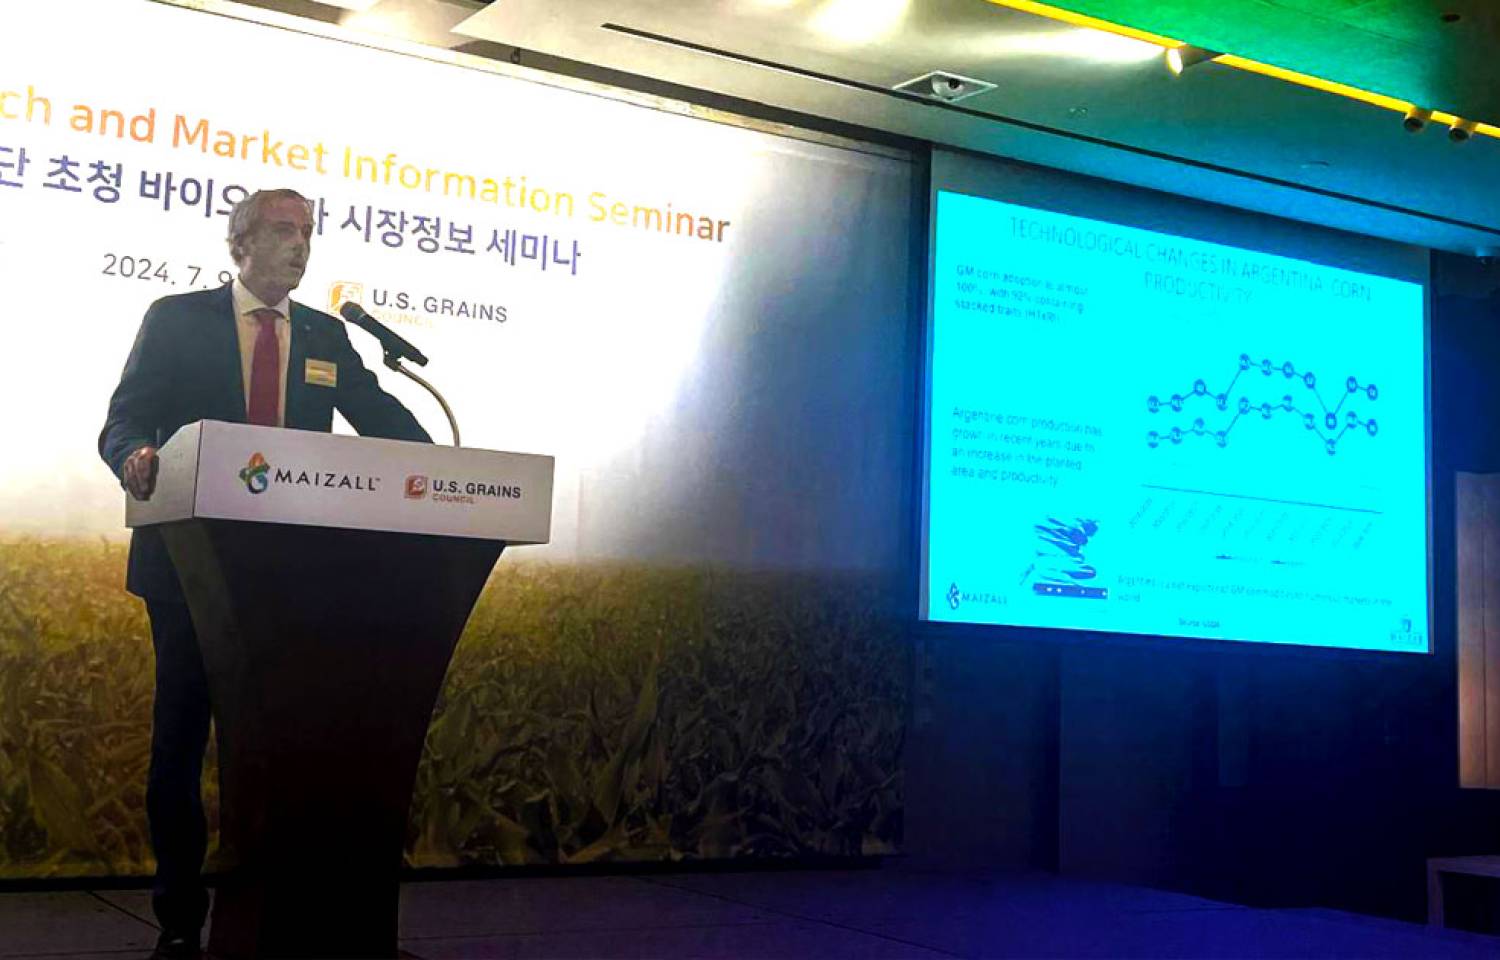 Corea del Sur: Seminario sobre Biotecnología, Mercados y Comercio Internacional del Maíz